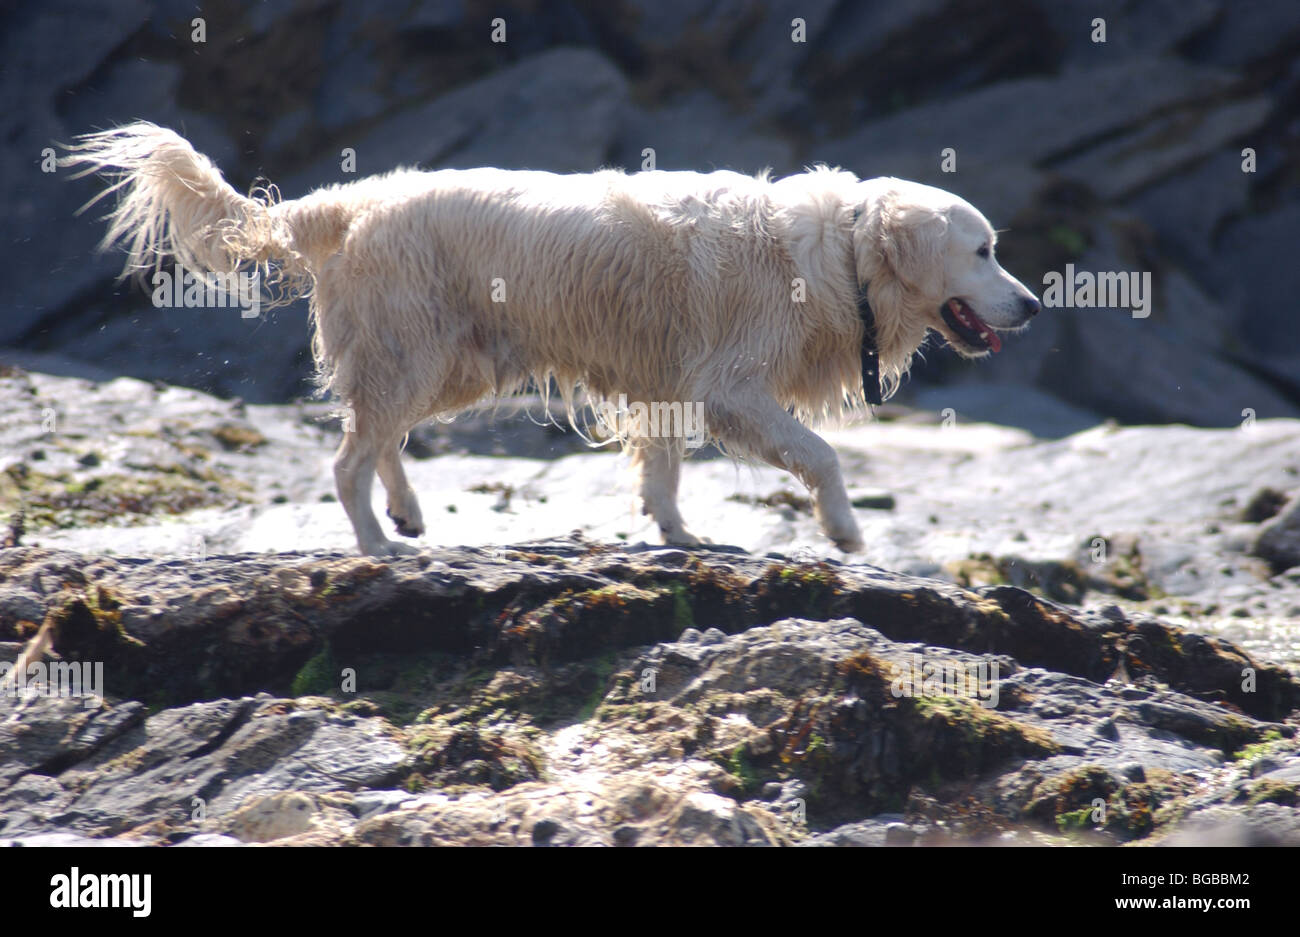 Image libre photo de promenade de chiens avec une couche humide sur une promenade le long de la côte britannique et l'article sur les rochers sur la plage Banque D'Images